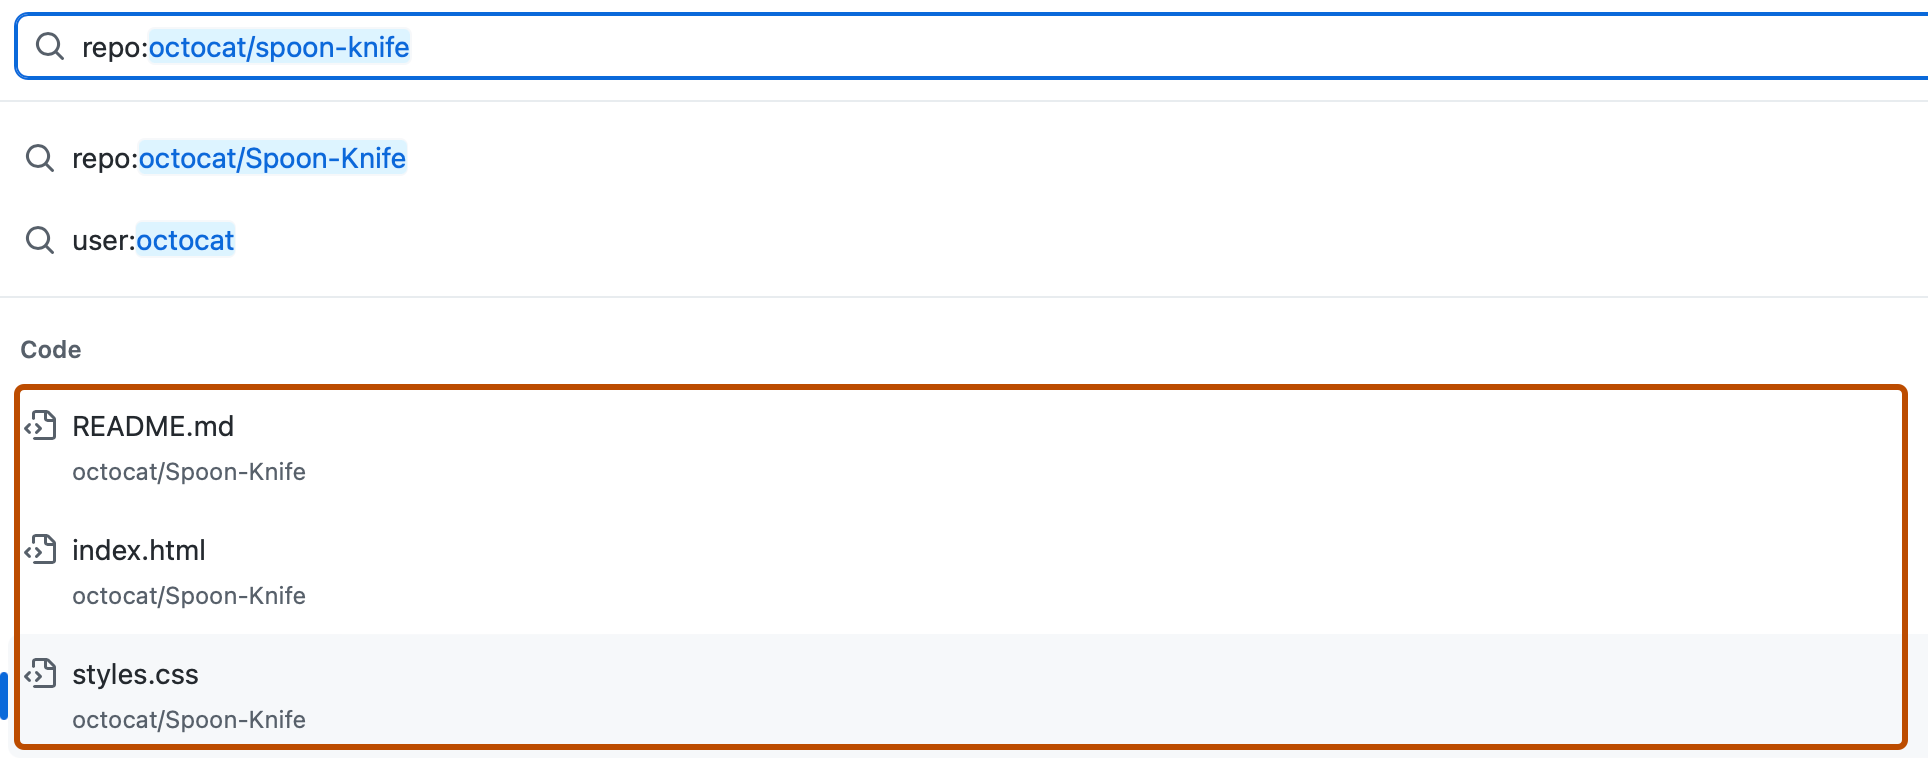 Capture d’écran d’une recherche pour « repo:octocat/spoon-knife ». Les résultats du code sont présentés dans un encadré orange foncé.